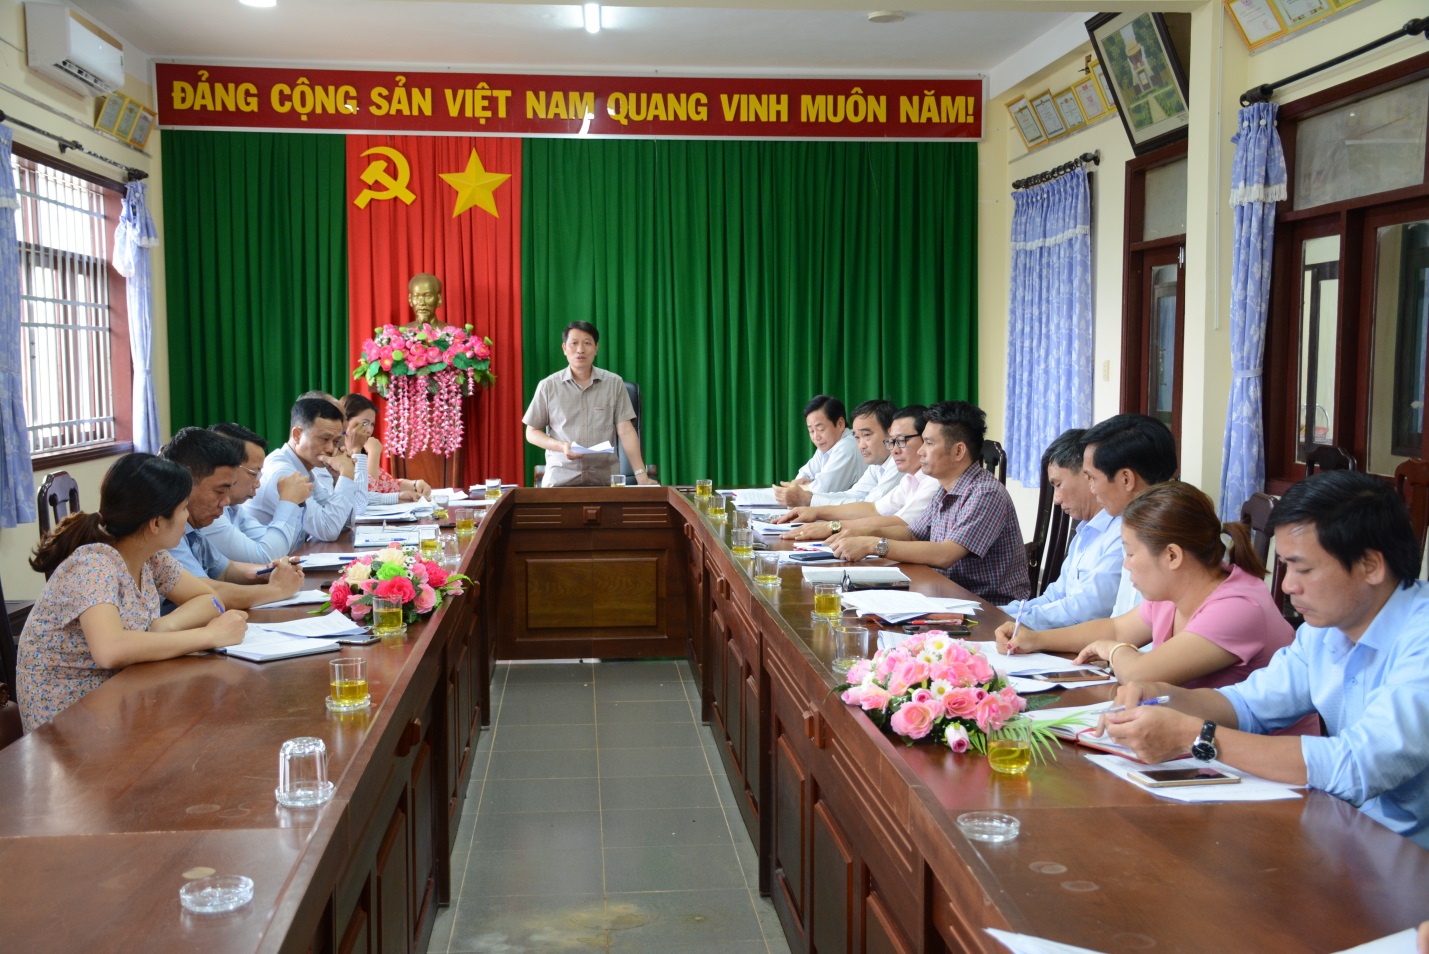 Quyền bầu cử ở Việt Nam là thành quả cách mạng và được Hiến định